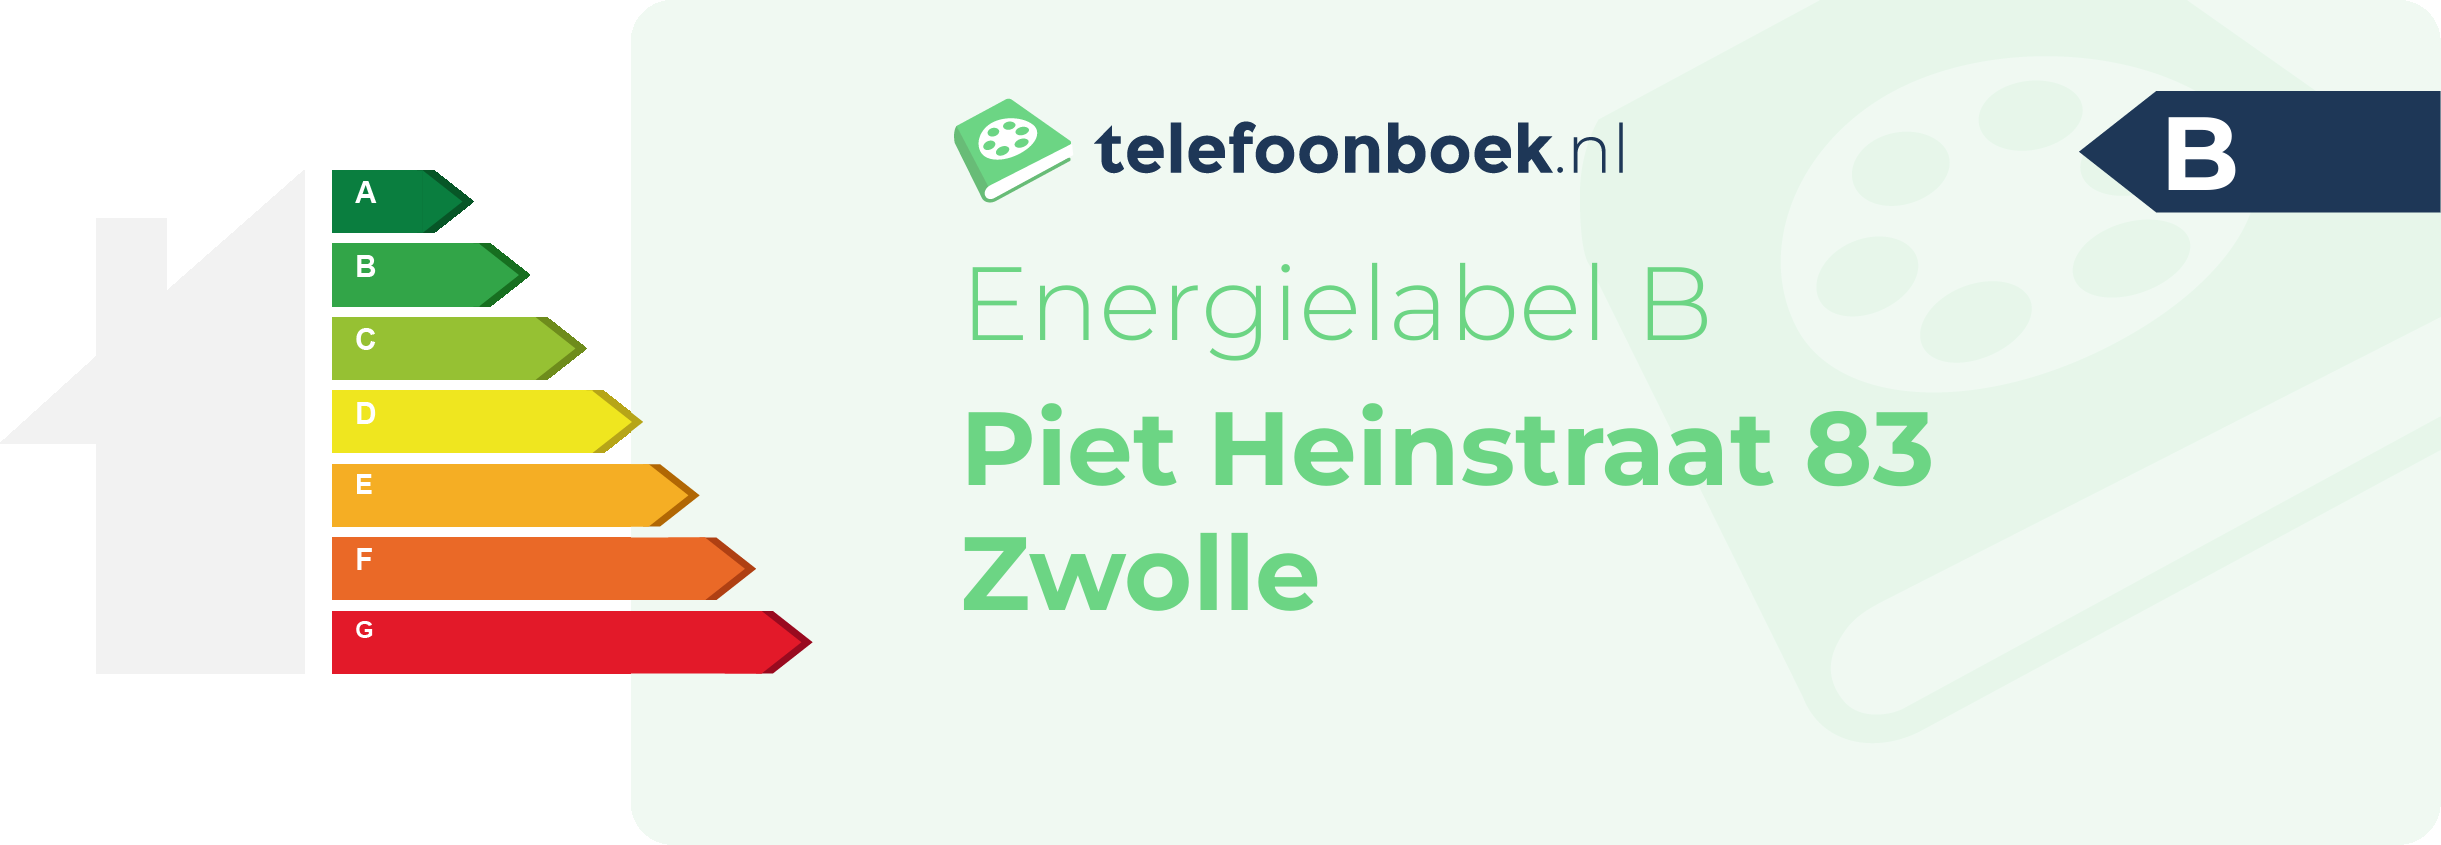 Energielabel Piet Heinstraat 83 Zwolle